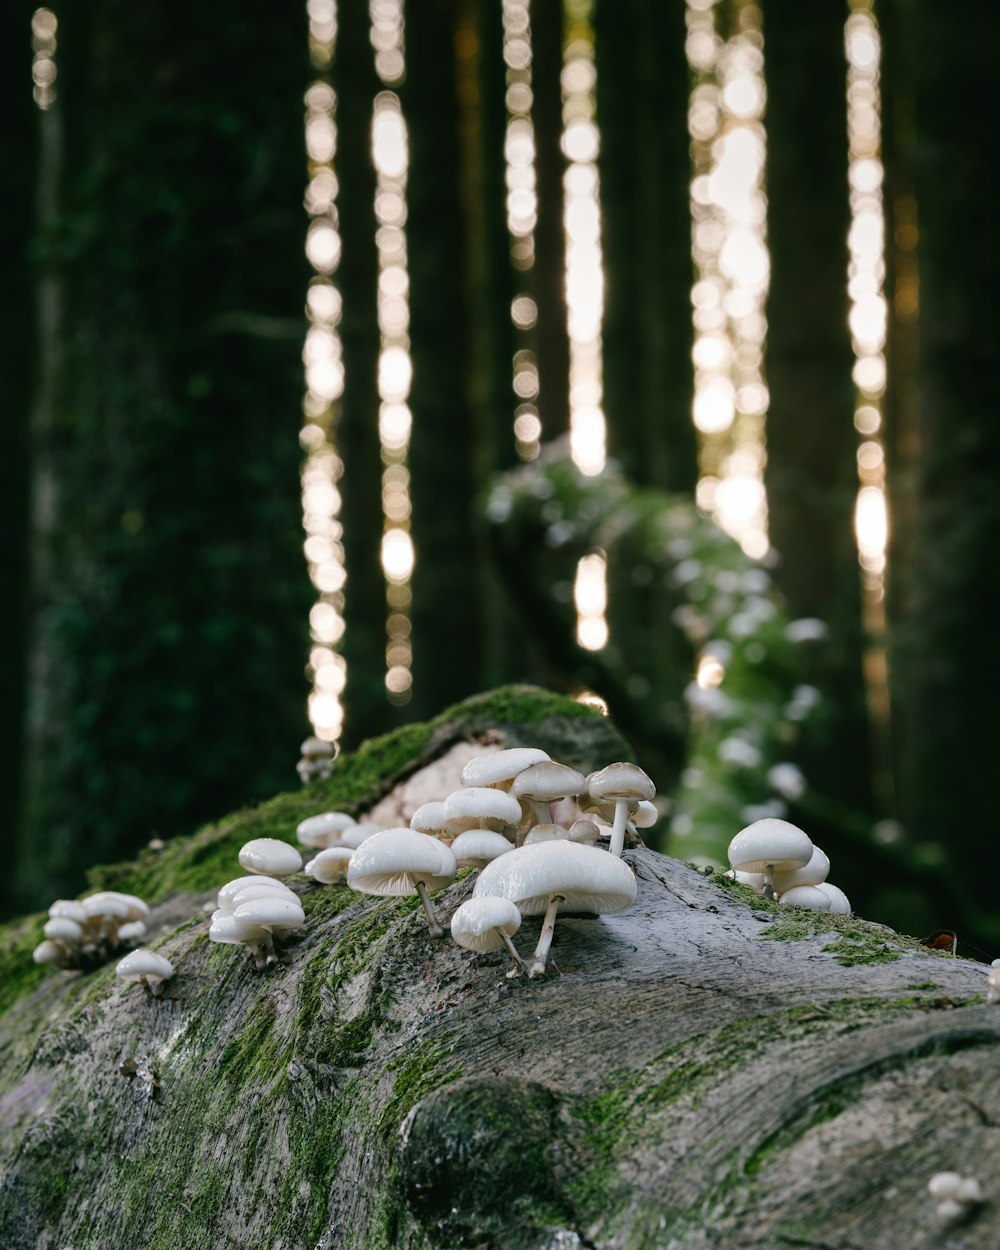 funghi bianchi su tronco d'albero marrone